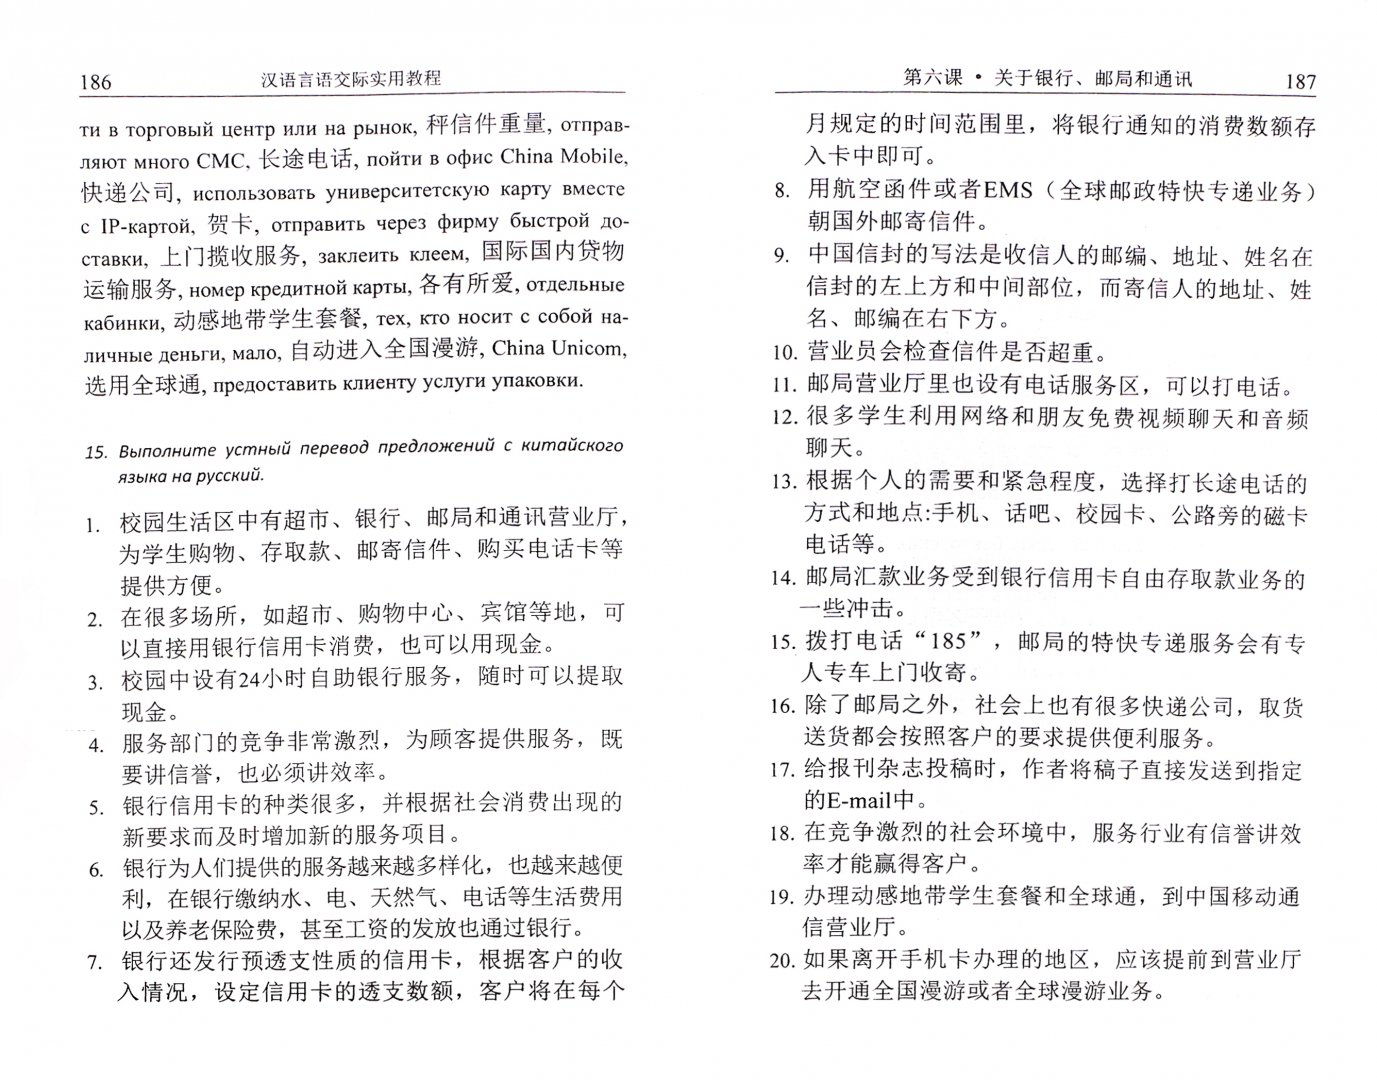 Иллюстрация 1 из 36 для Практический курс речевого общения на китайском языке. Учебник (+CD) - Цюй, Гурулева | Лабиринт - книги. Источник: Лабиринт